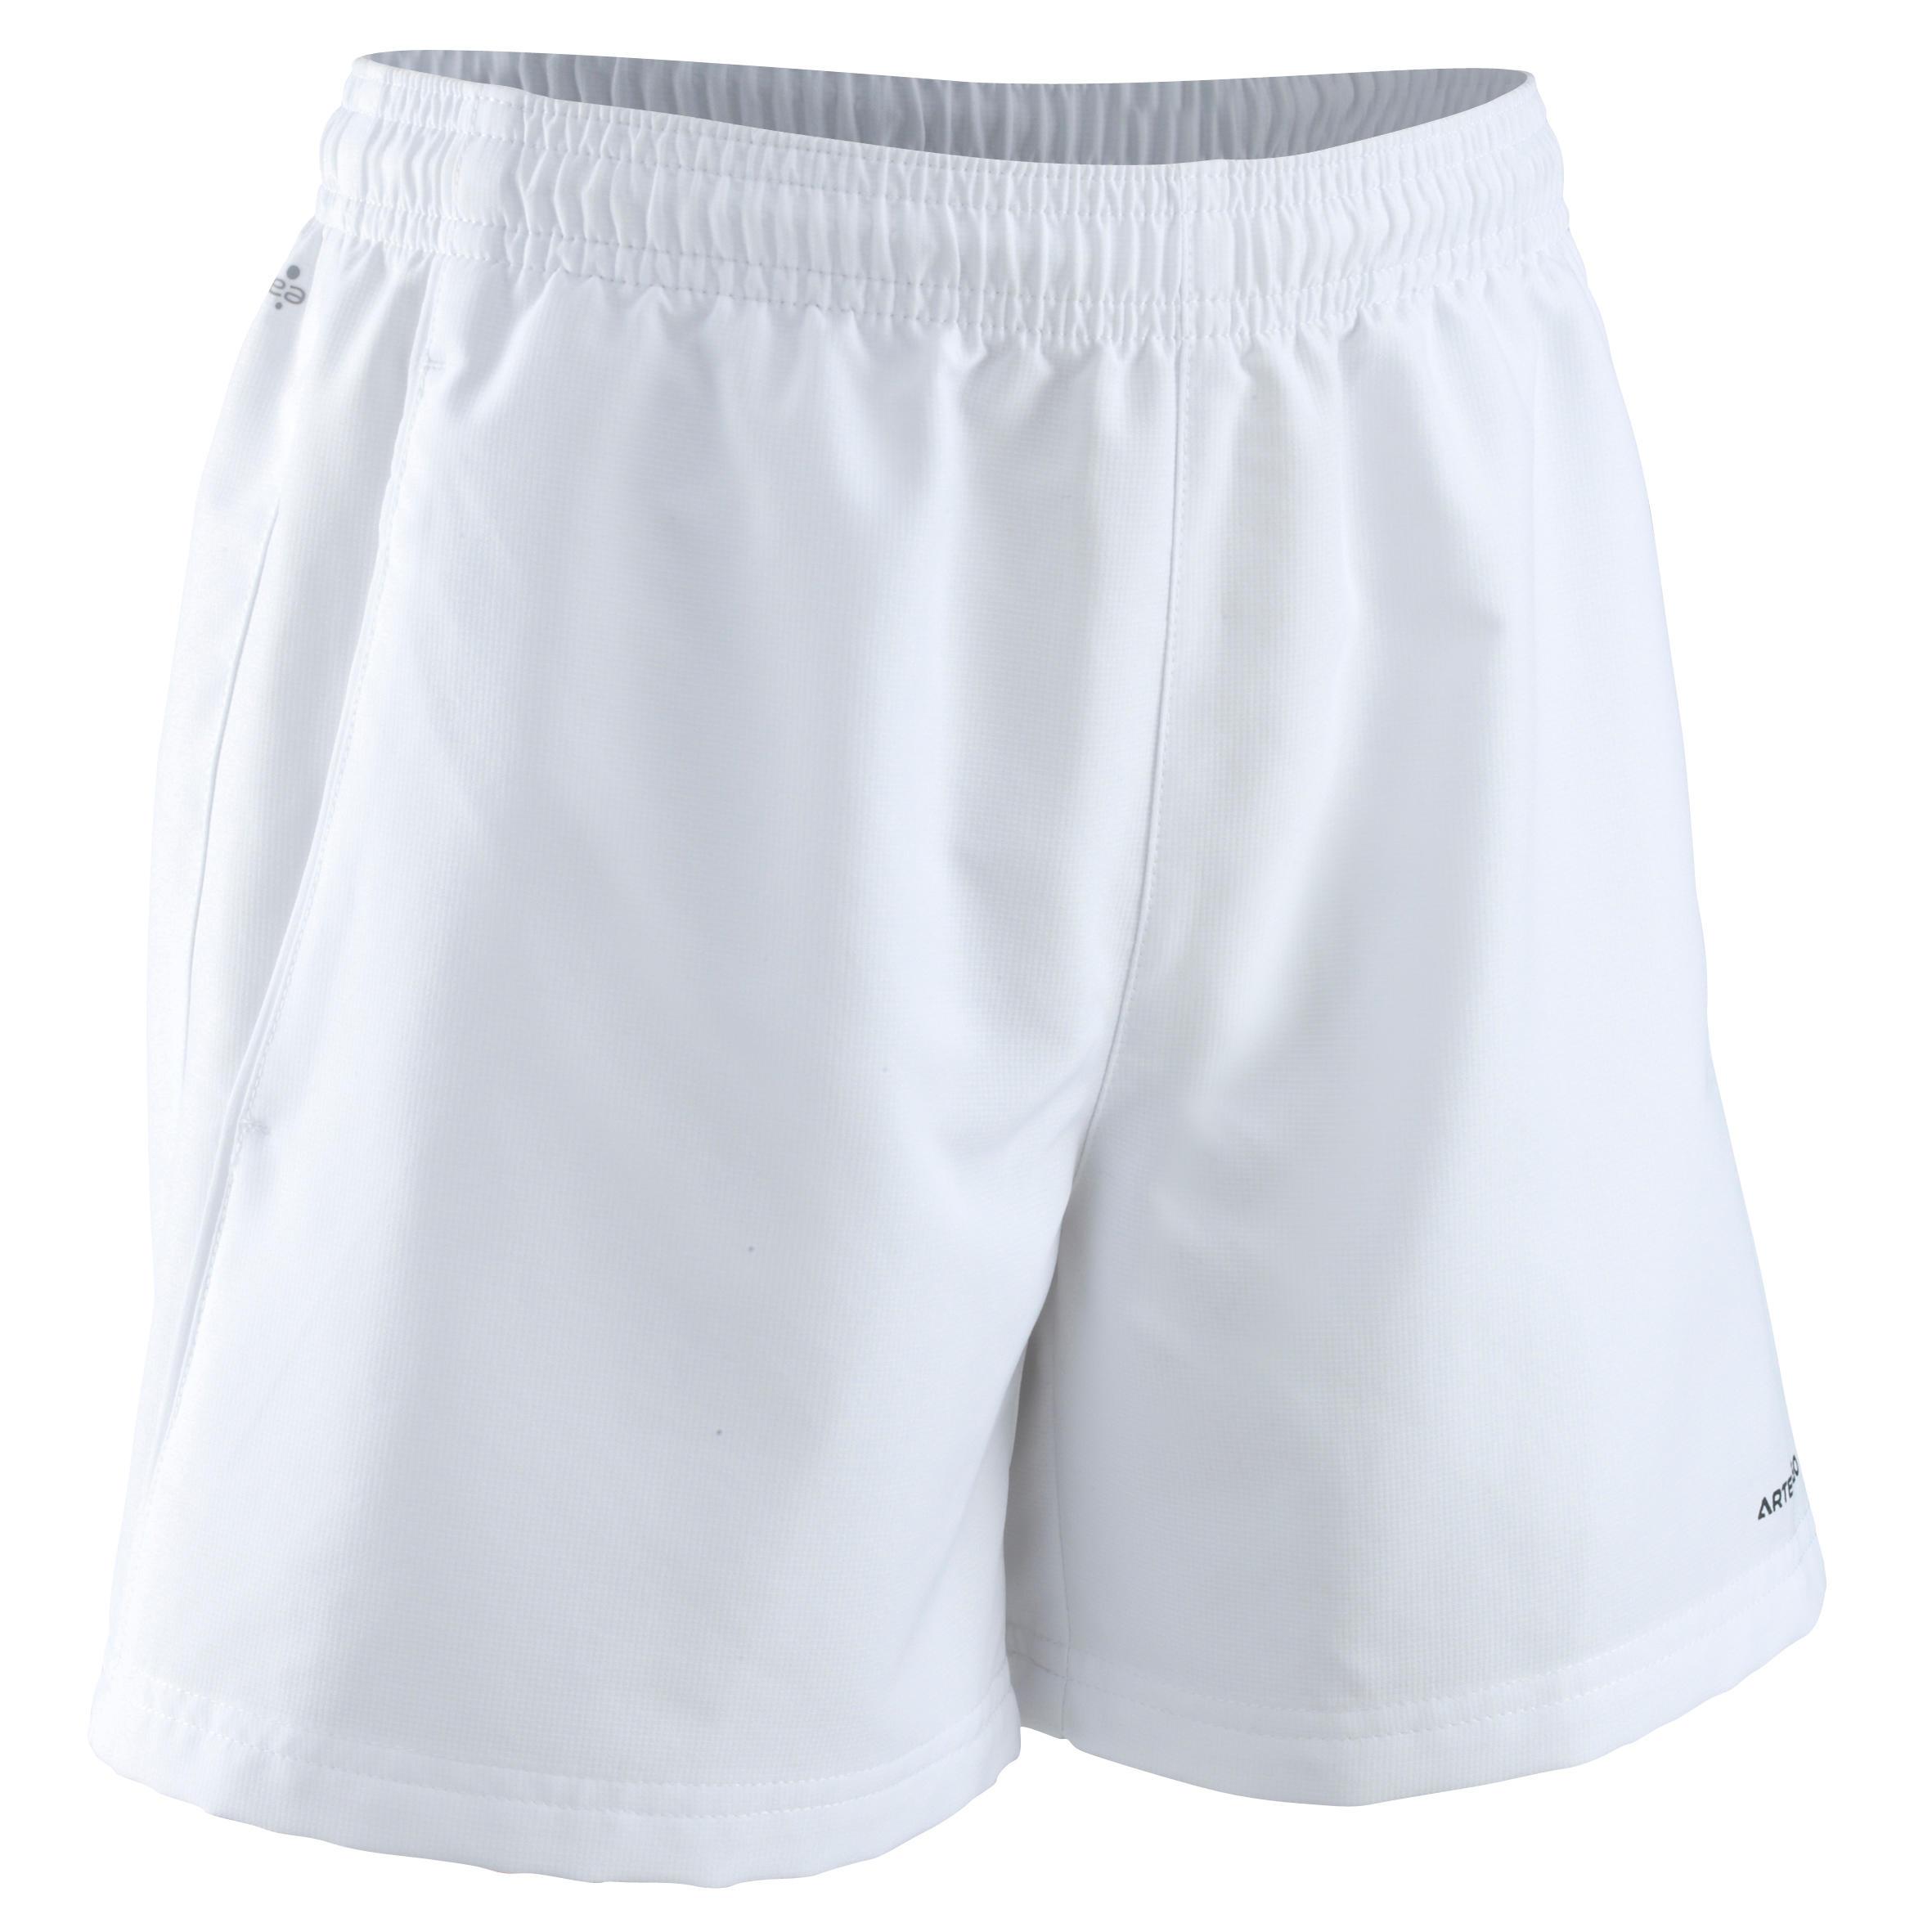 [ด่วน!! โปรโมชั่นมีจำนวนจำกัด] กางเกงเทนนิสขาสั้นสำหรับเด็กรุ่น 100 (สีขาว) สำหรับ เทนนิสชายหาด ฟร้อนท์เทนนิส เทนนิส